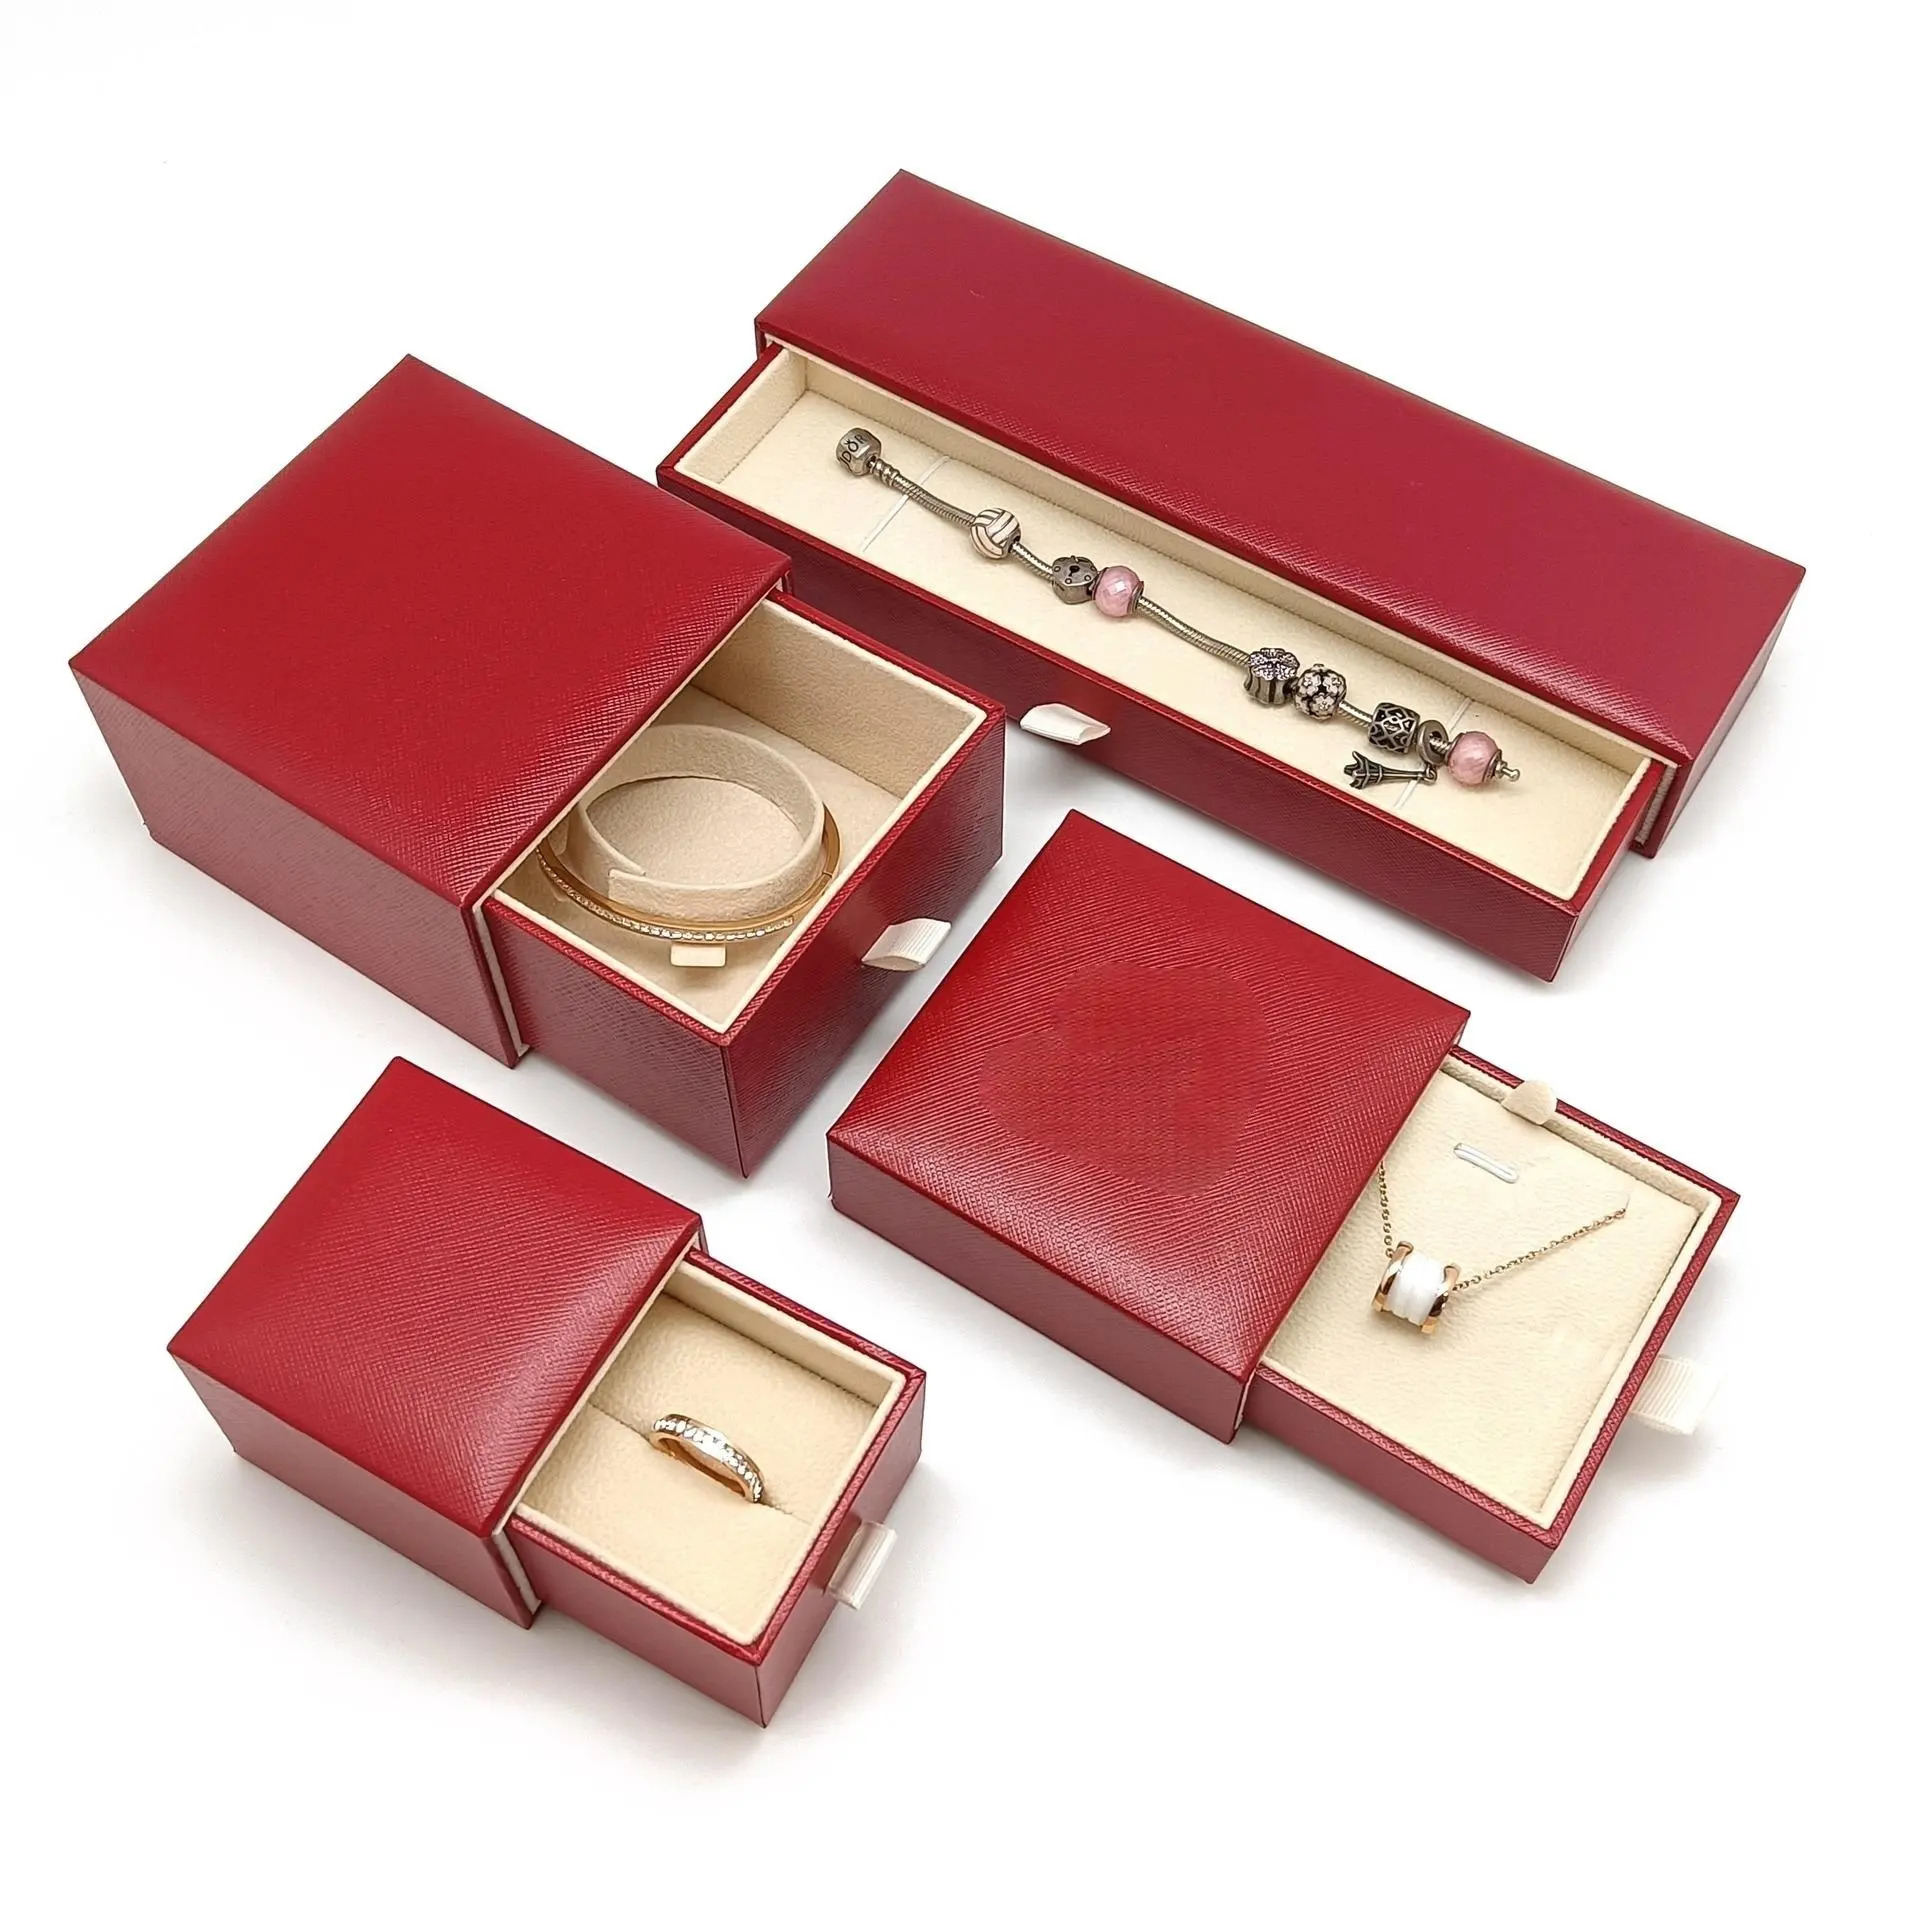 BAS quantité minimale de commande One Top Boîte à bagues personnalisée Boîte à bracelets pendentifs en cuir Boîte d'emballage pour bijoux